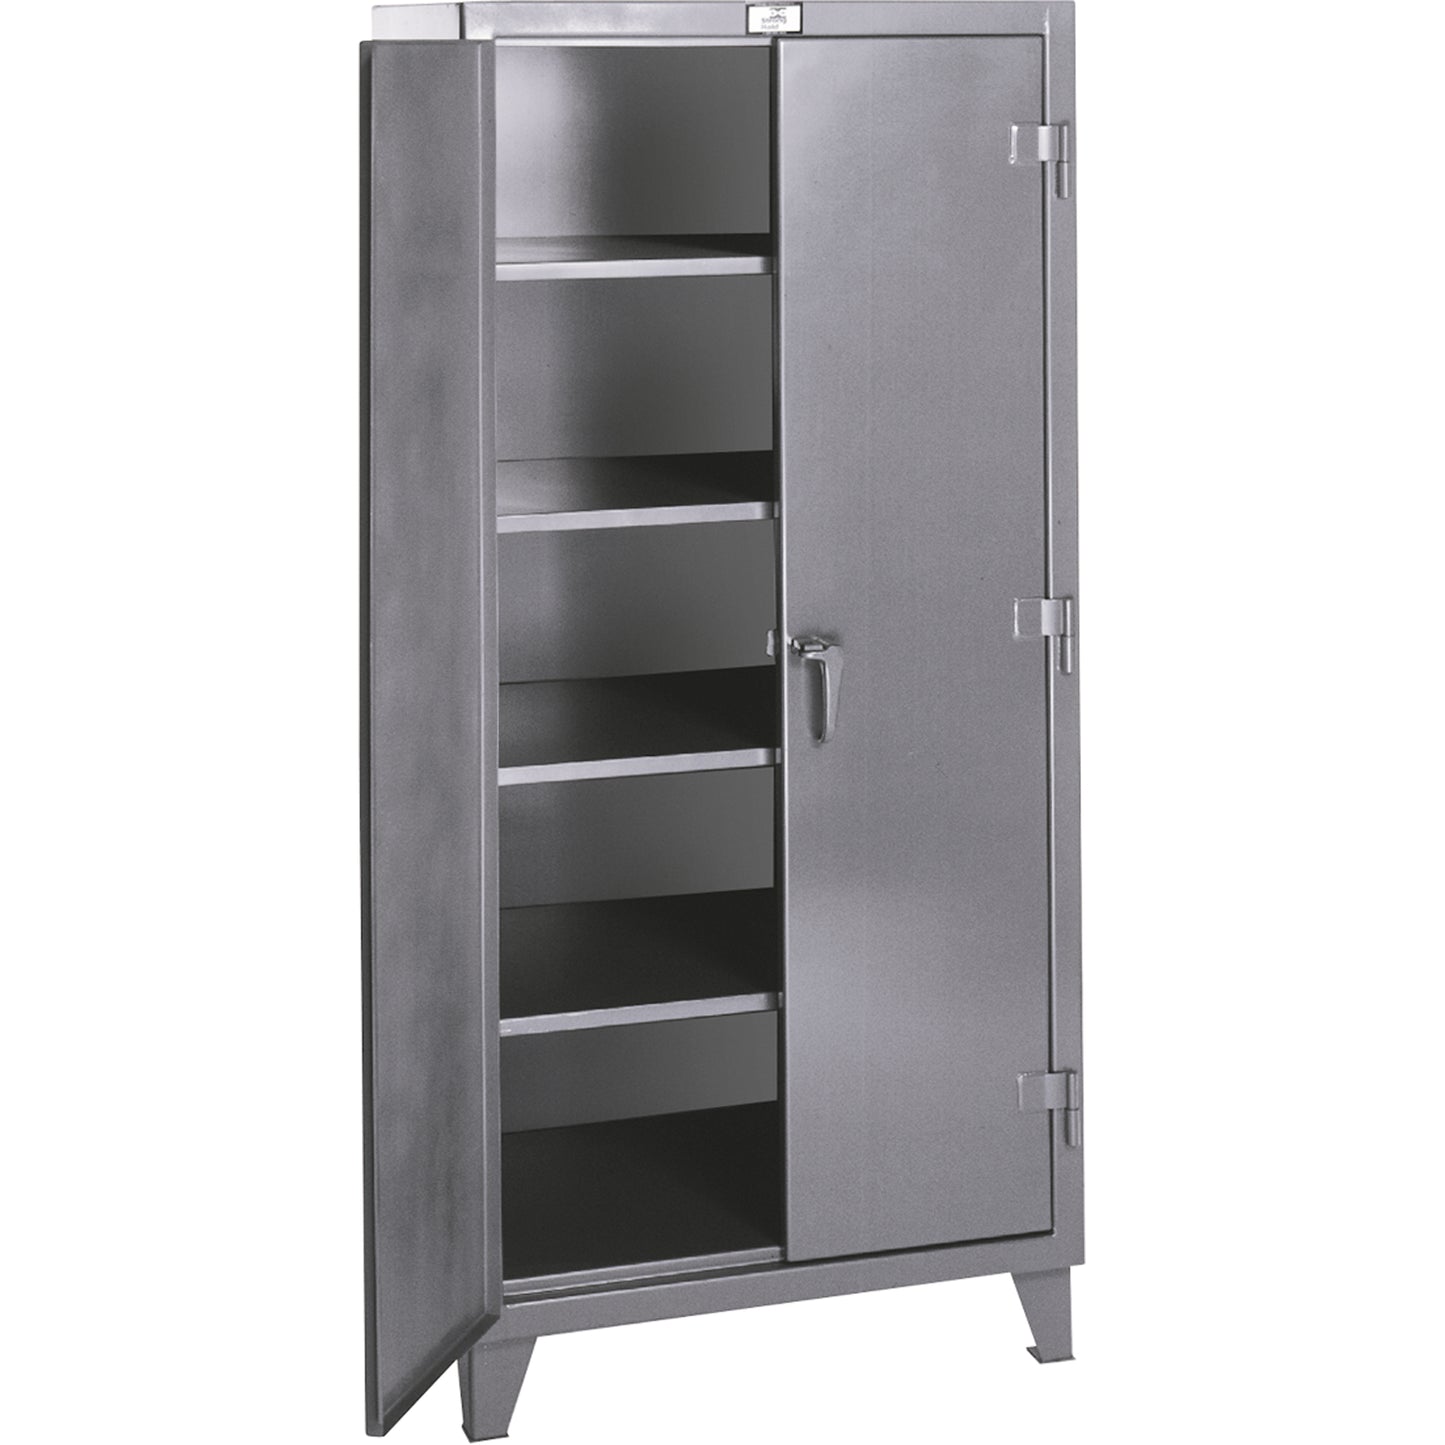 Rough & Tough Storage Cabinets, Steel, 4 Shelves, 72" H x 36" W x 24" D